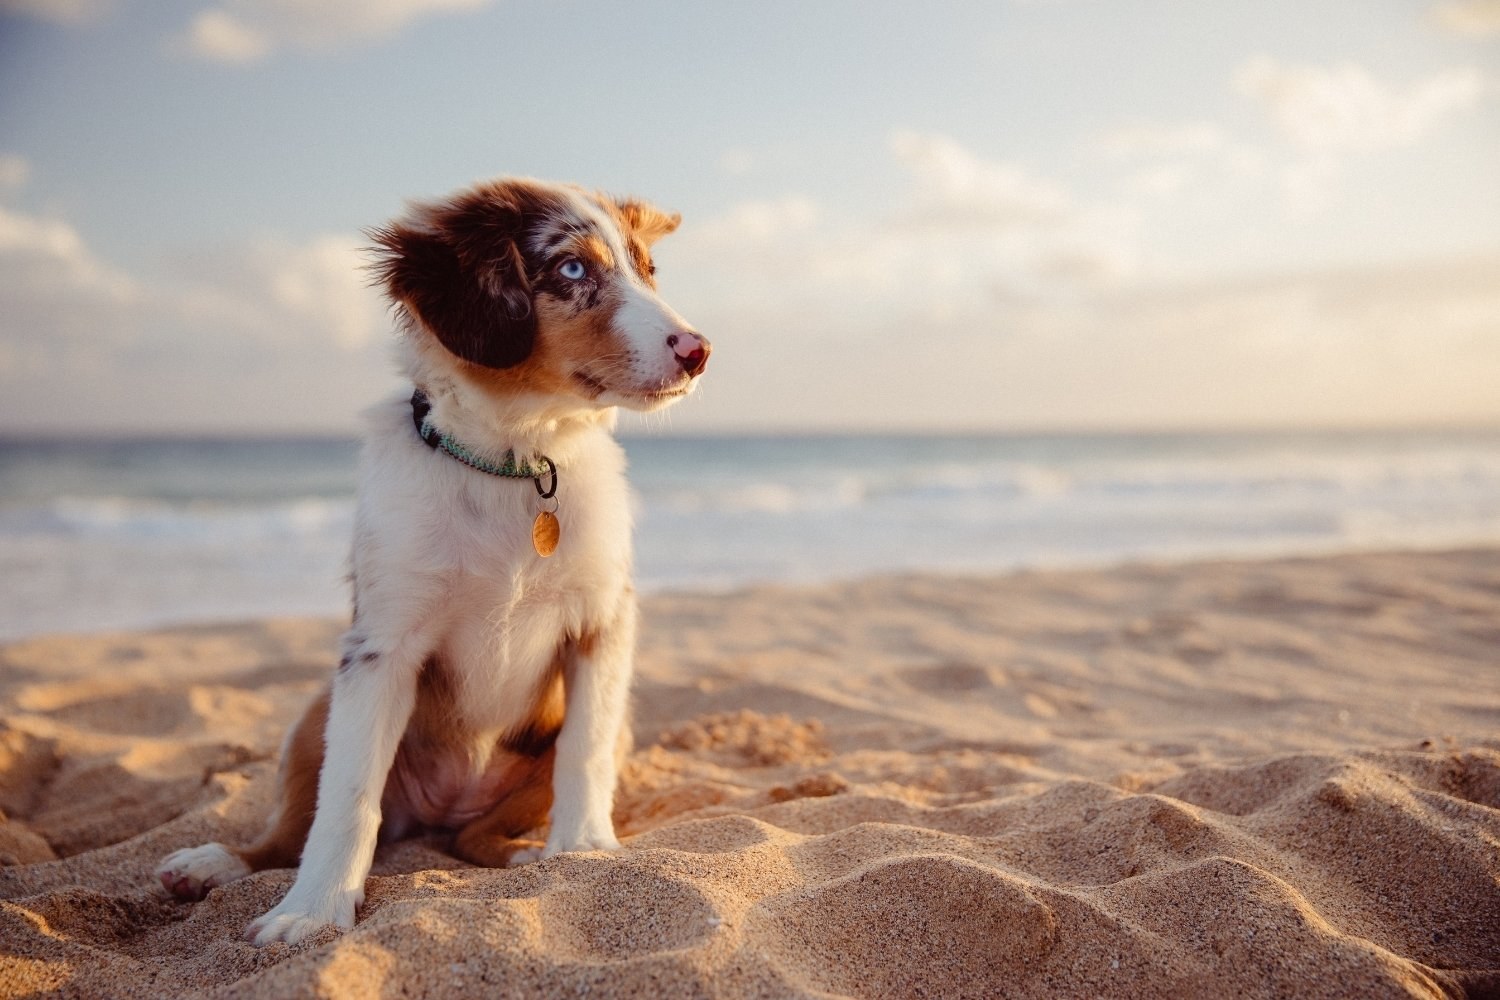 Puppy at beach